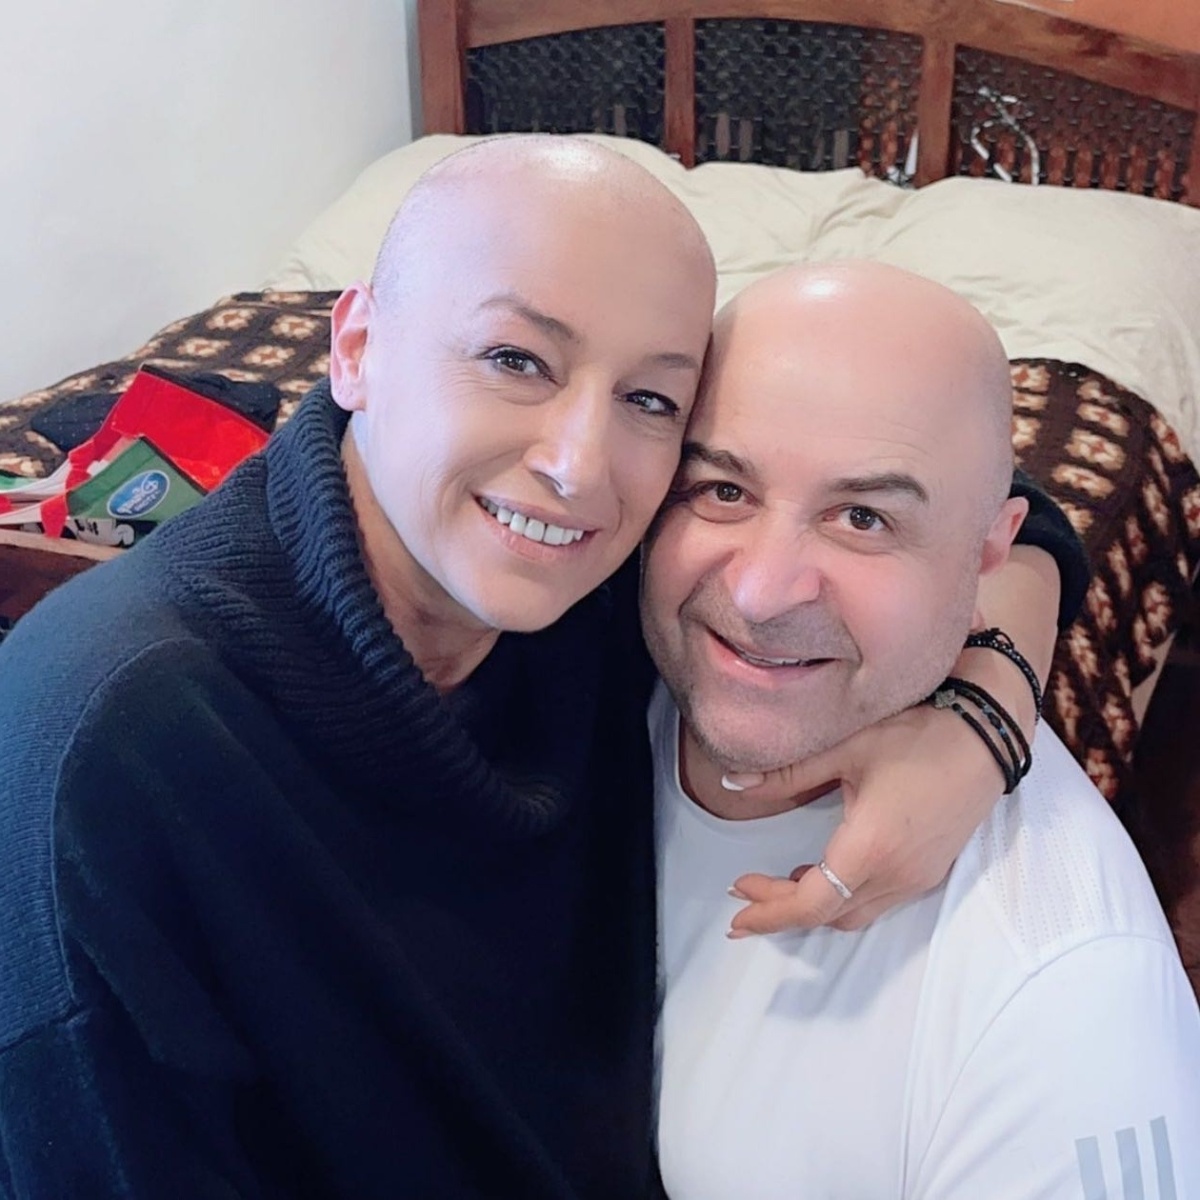 Μάρκος Σεφερλής: Μια συγκινητική χειρονομία υποστήριξης για τον καλλιτέχνη μακιγιάζ που παλεύει με τον καρκίνο